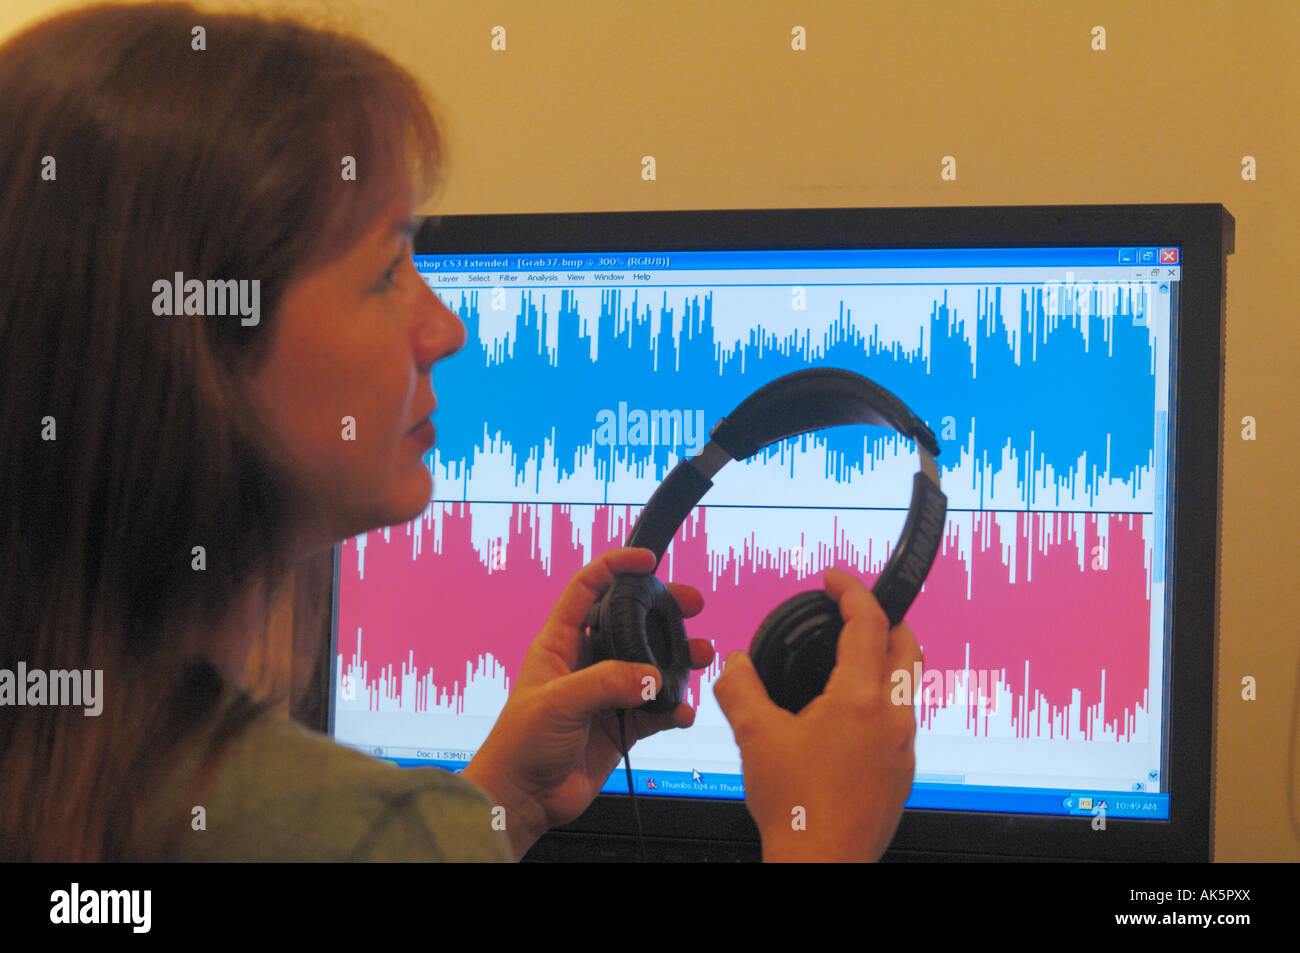 L'étude de l'étudiant des ondes audio sur l'écran de l'ordinateur et projetés background Banque D'Images